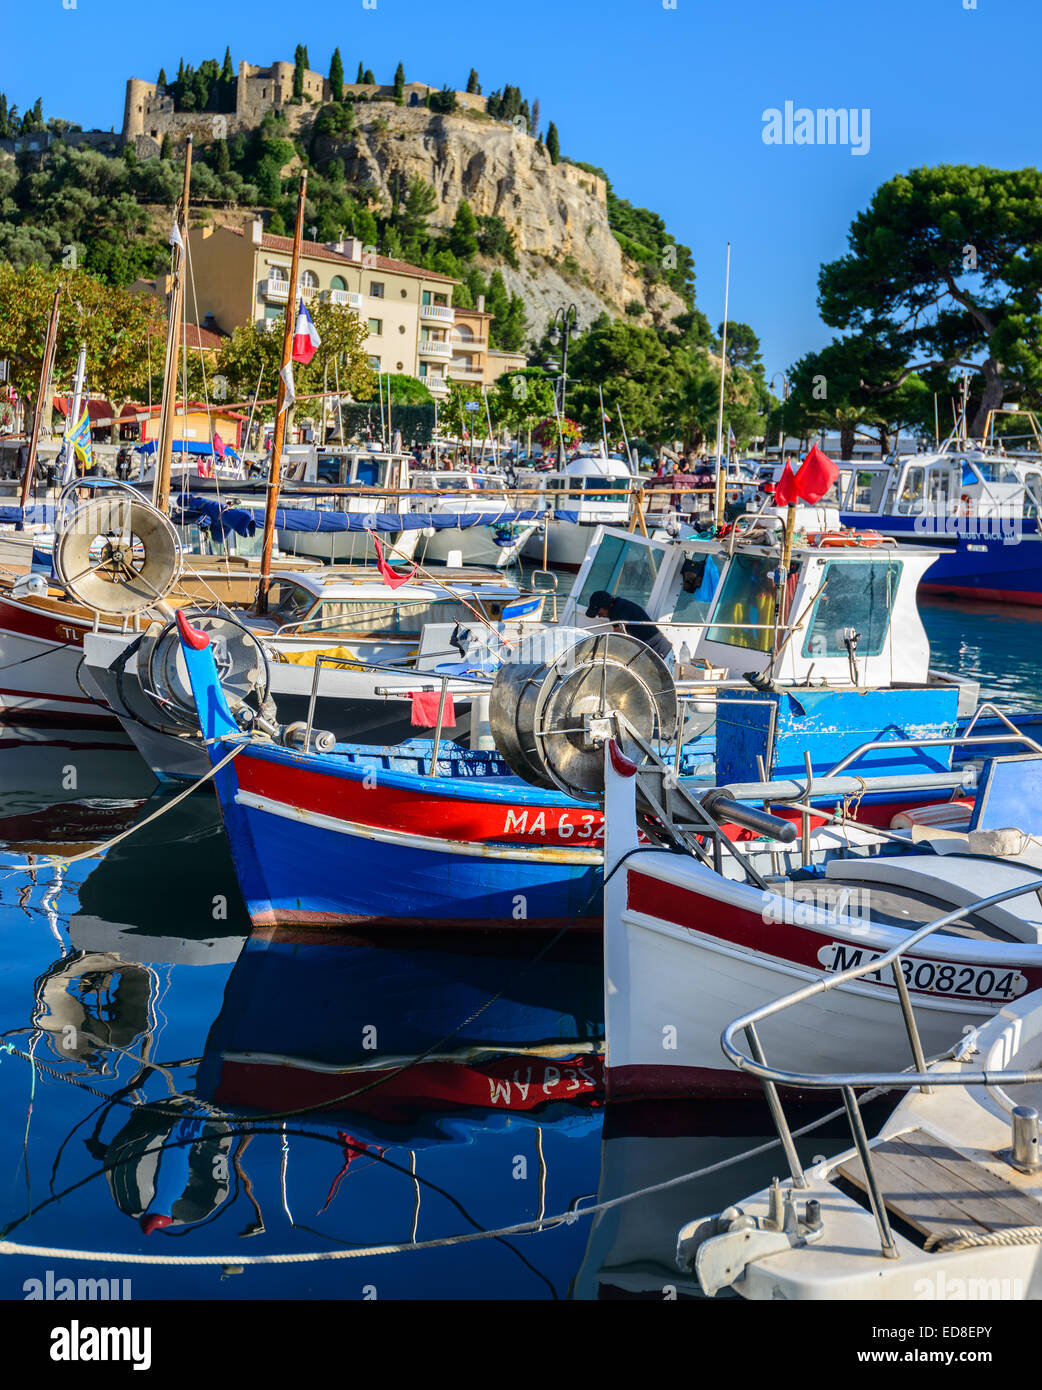 Le port de Cassis, Village de Cassi, sud de la France, Provence, près de Marseille Banque D'Images